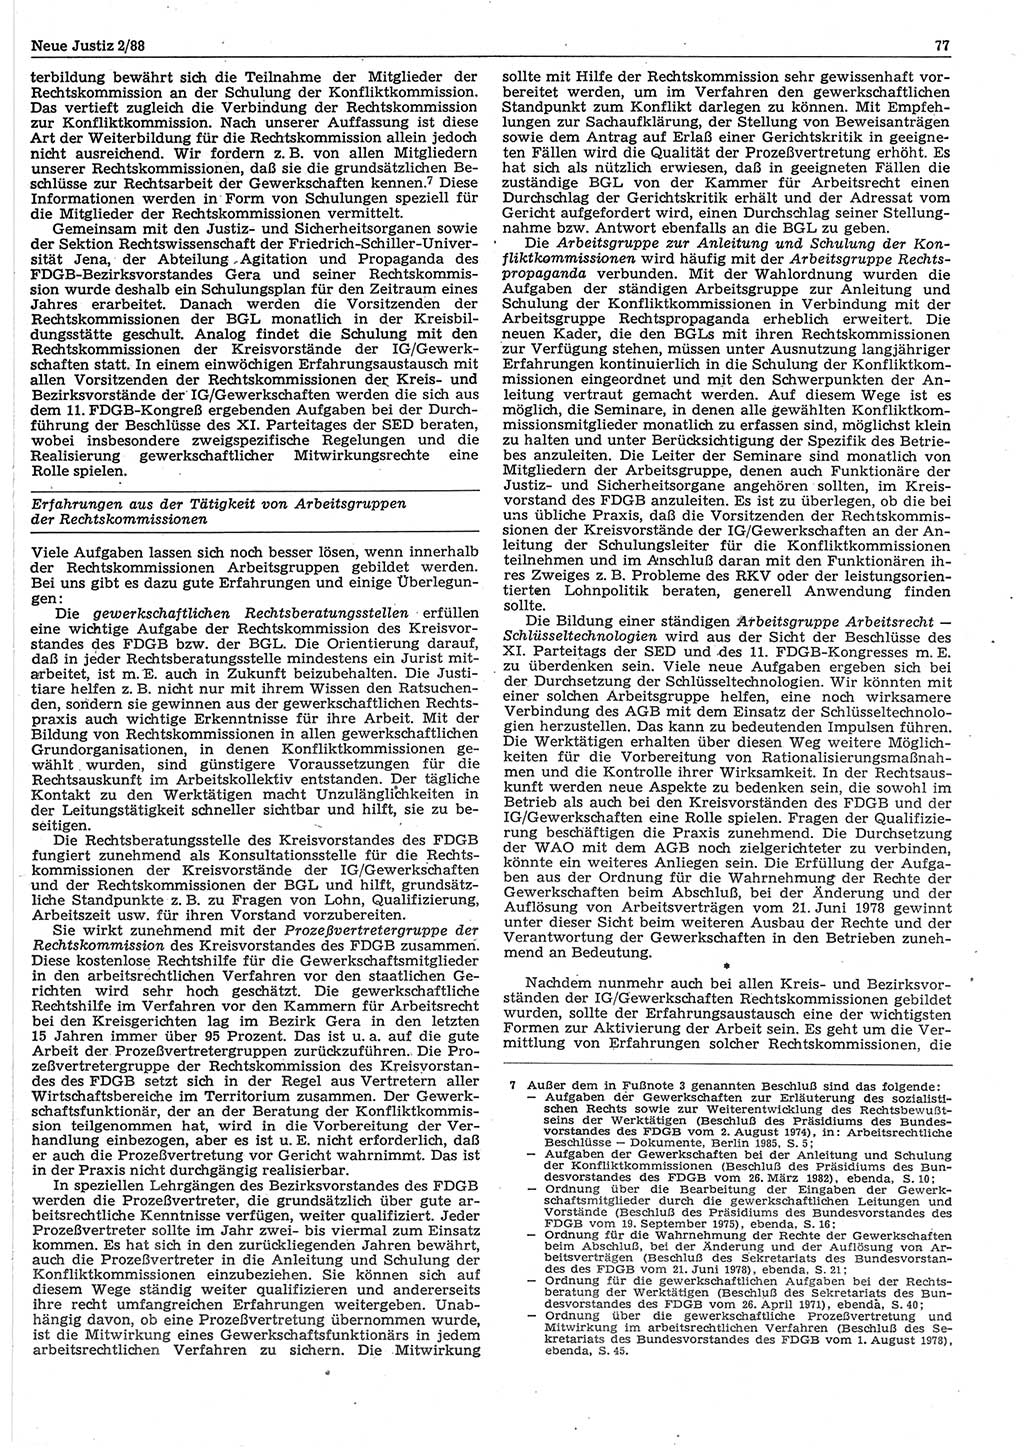 Neue Justiz (NJ), Zeitschrift für sozialistisches Recht und Gesetzlichkeit [Deutsche Demokratische Republik (DDR)], 42. Jahrgang 1988, Seite 77 (NJ DDR 1988, S. 77)